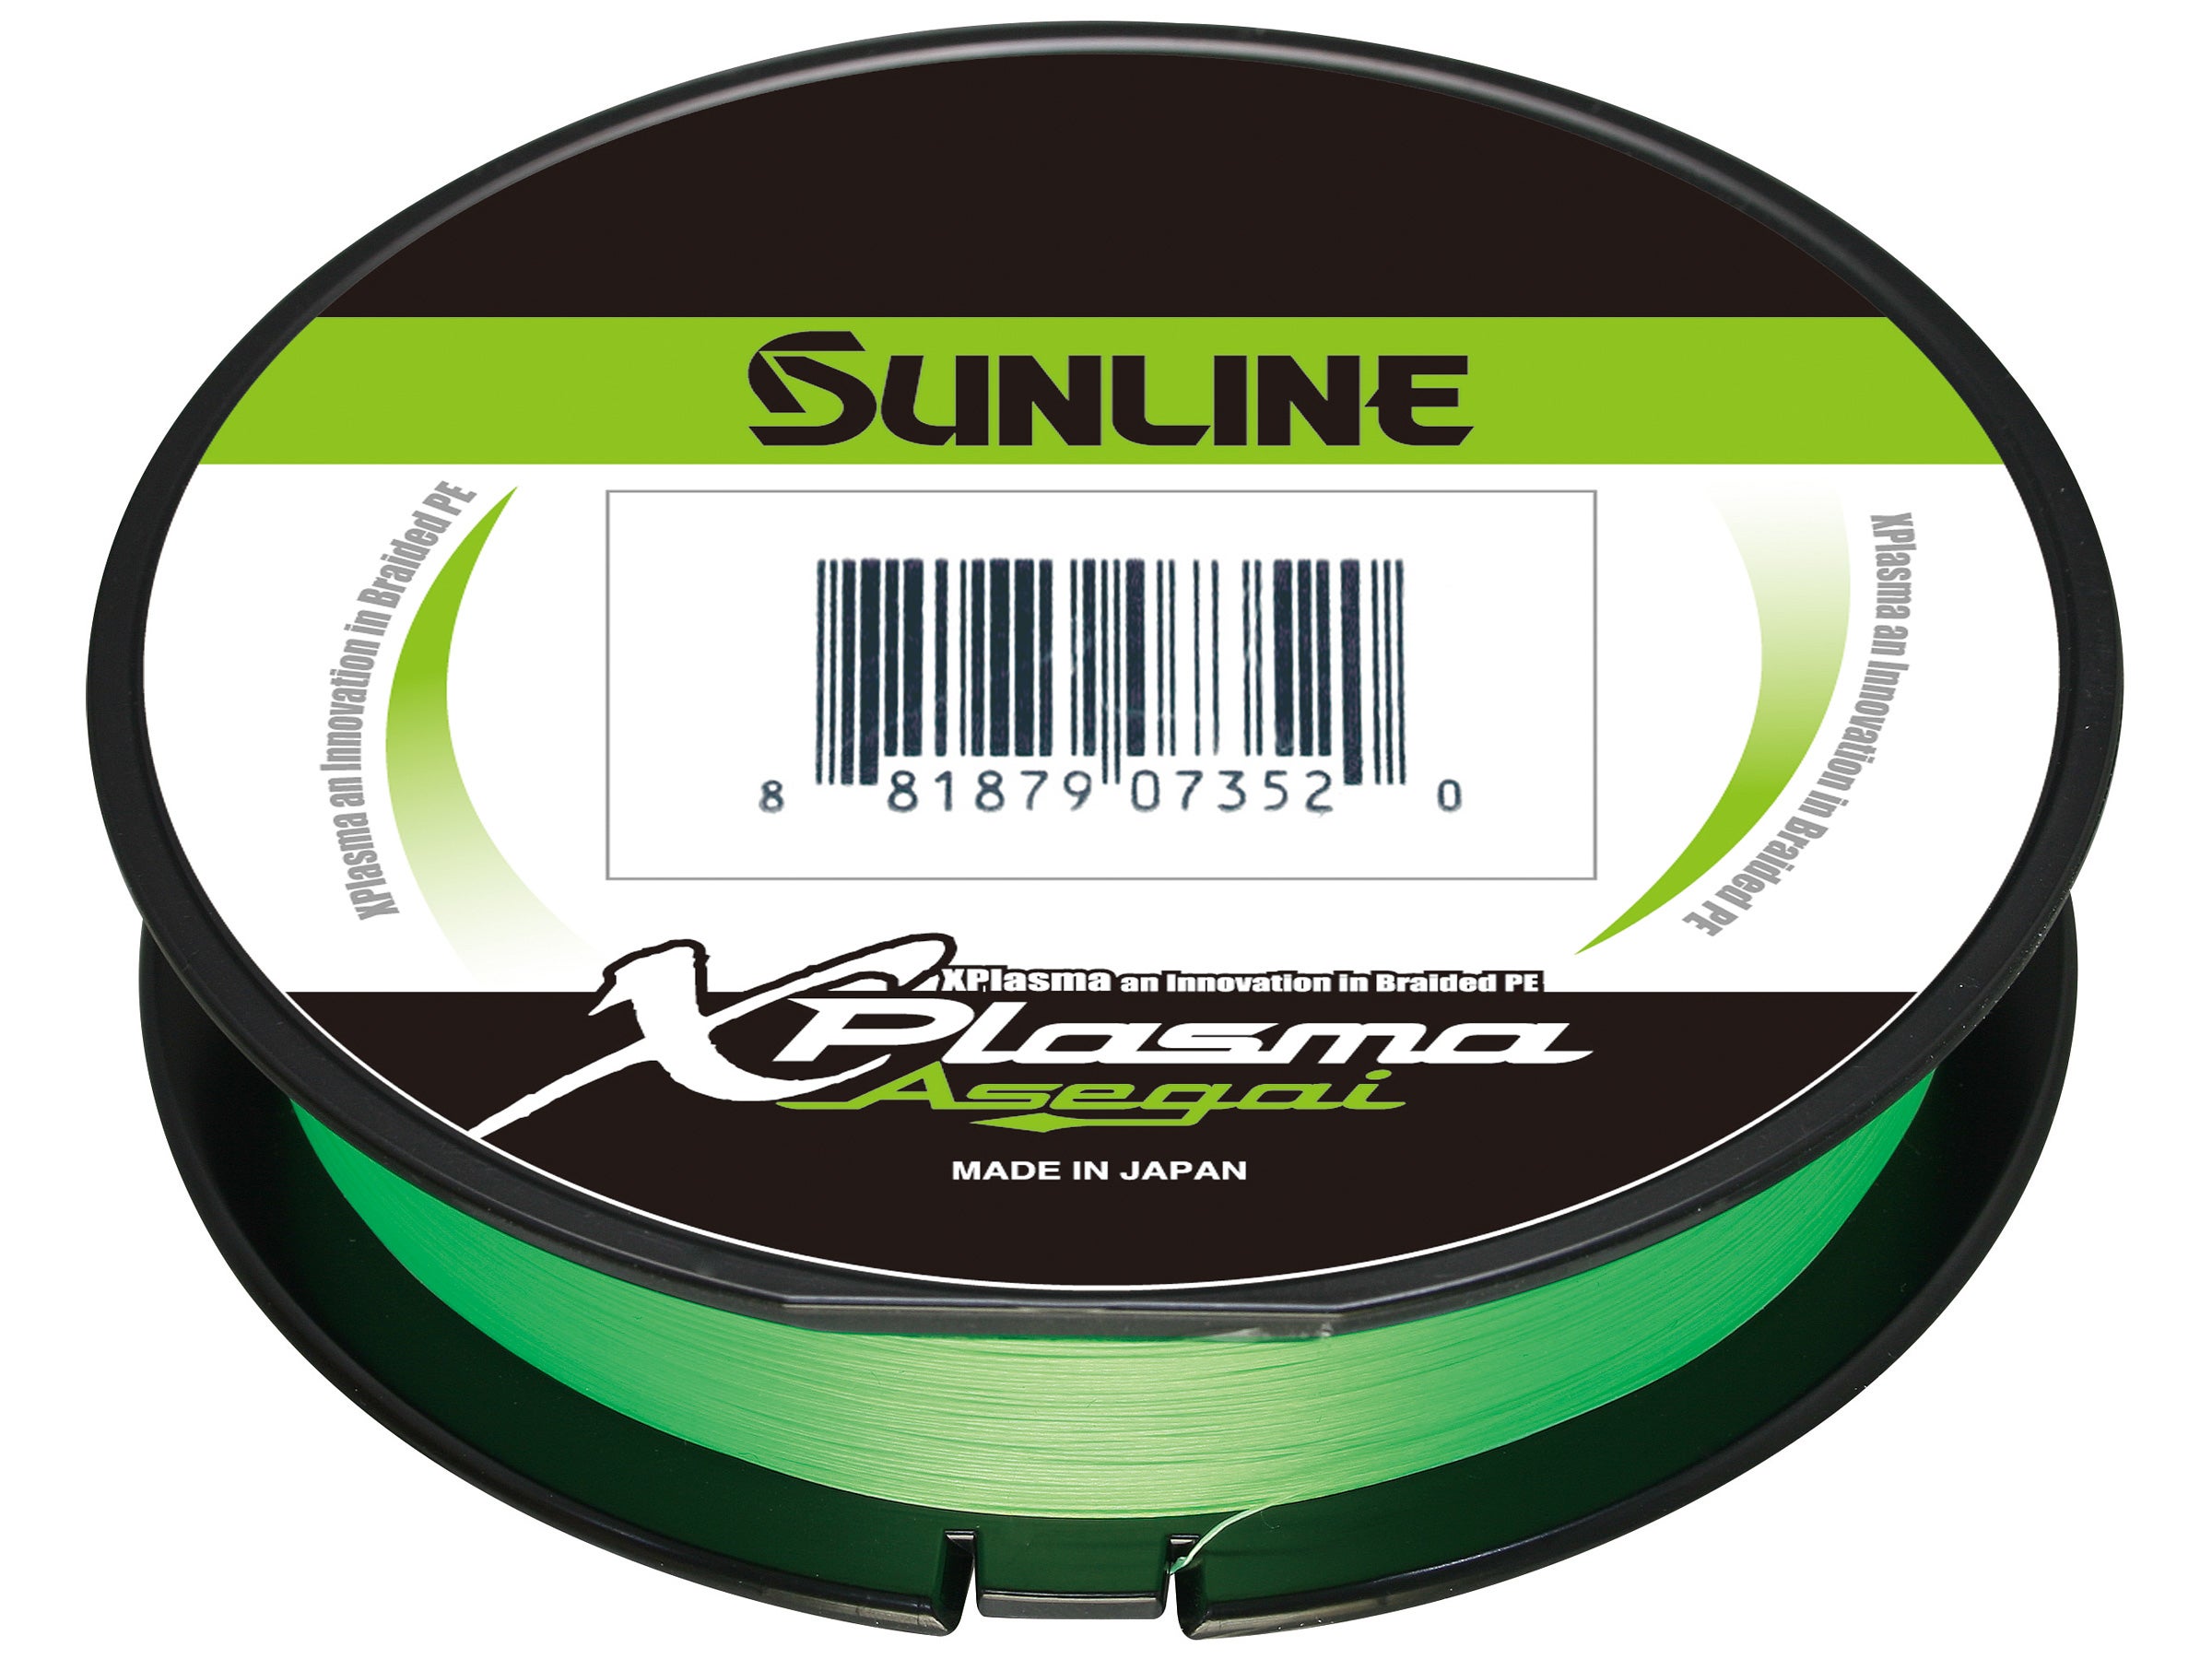 SUNLINE Xplasma Asegai 12lb Light Green 165yd 63043204 for sale online 